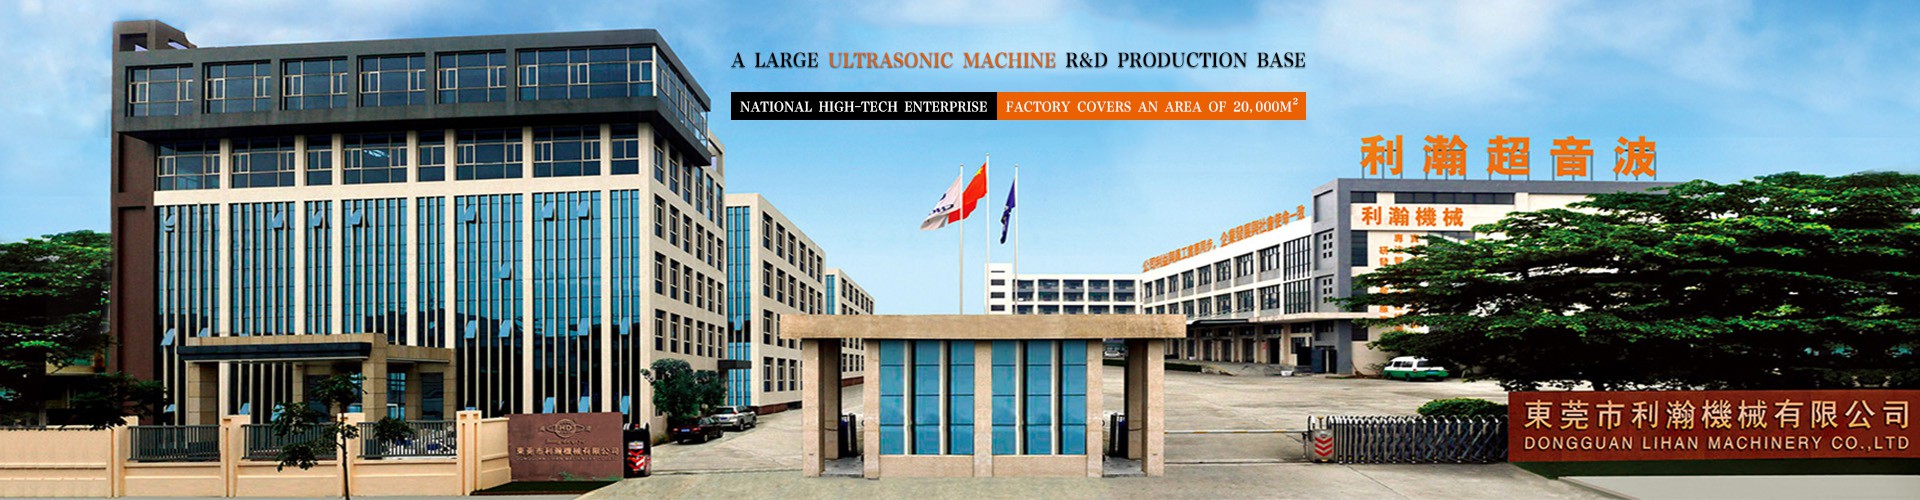 Dongguan Lihan Machinery Co.,Ltd